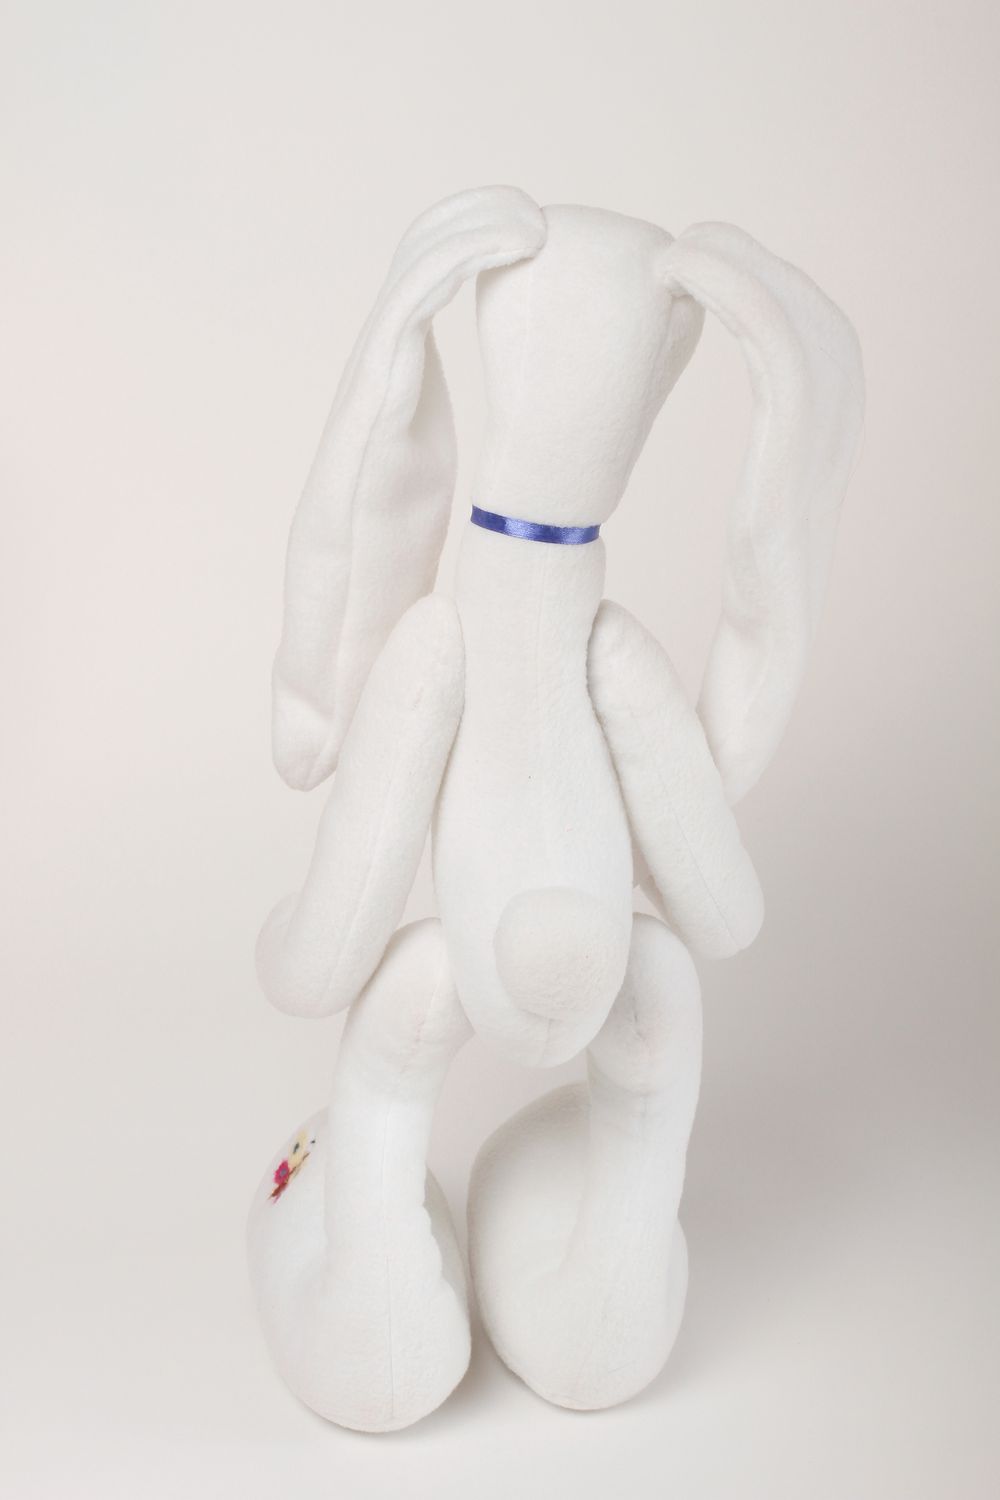 Peluche lapin faite main Jouet pour enfant blanc Décoration chambre bébé photo 3